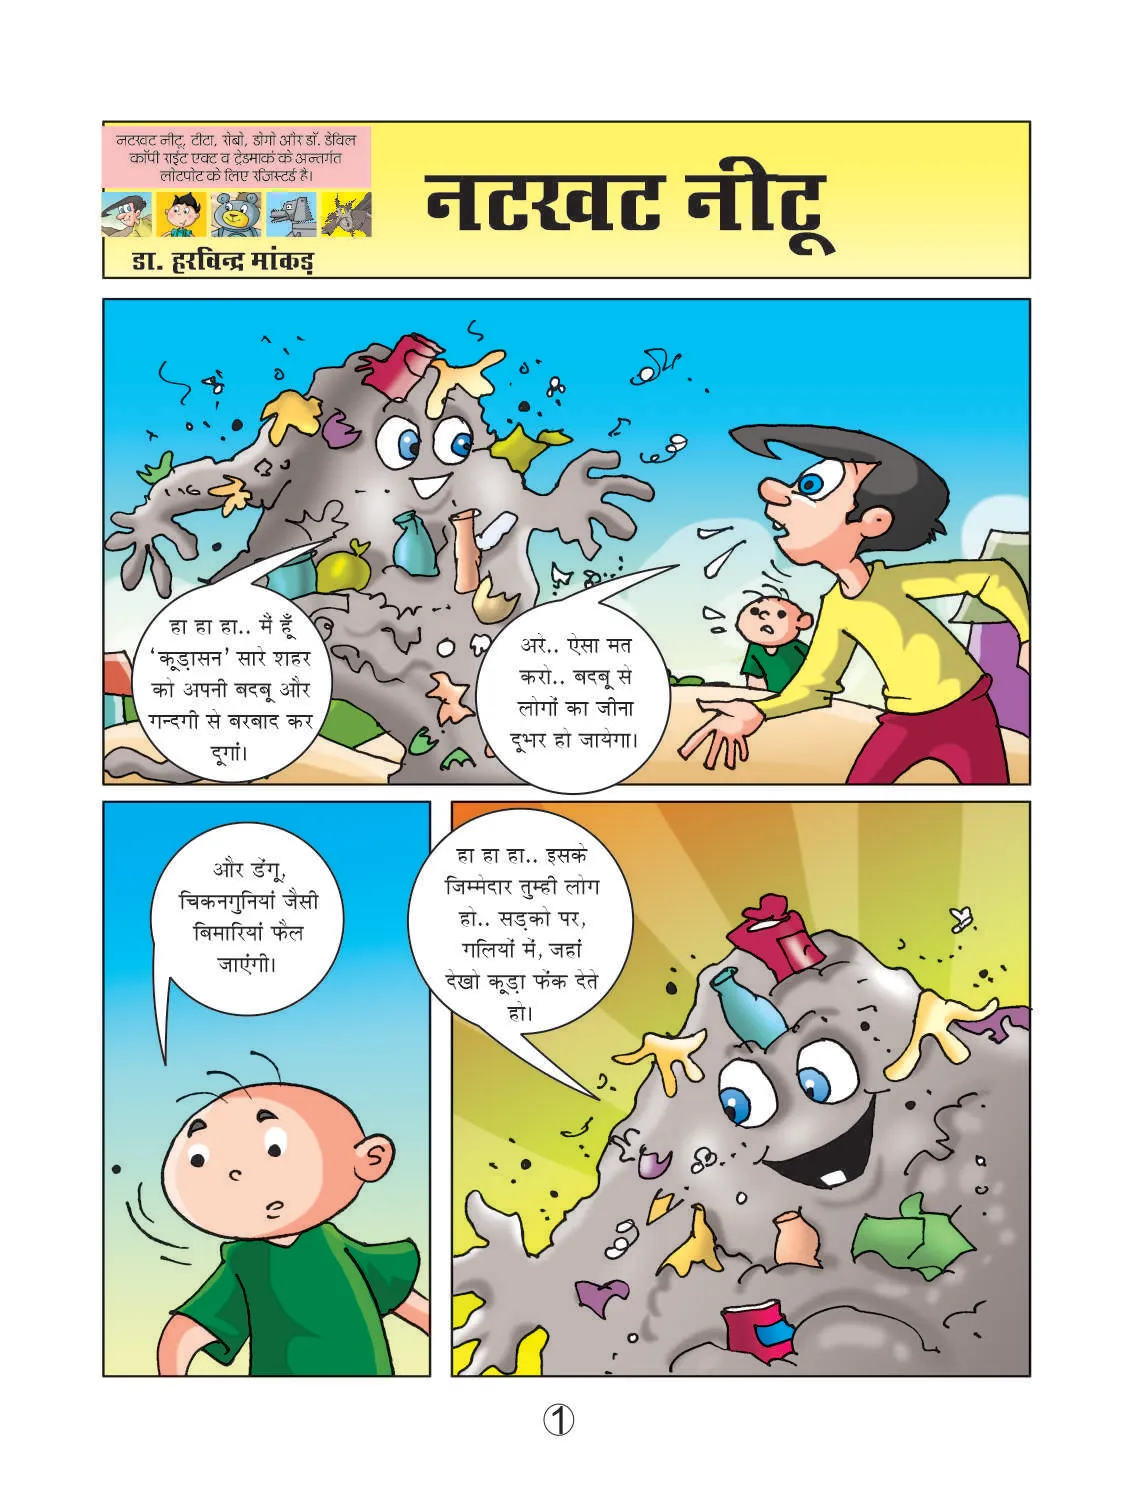 Natkhat neetu fighting with kudasan cartoon image